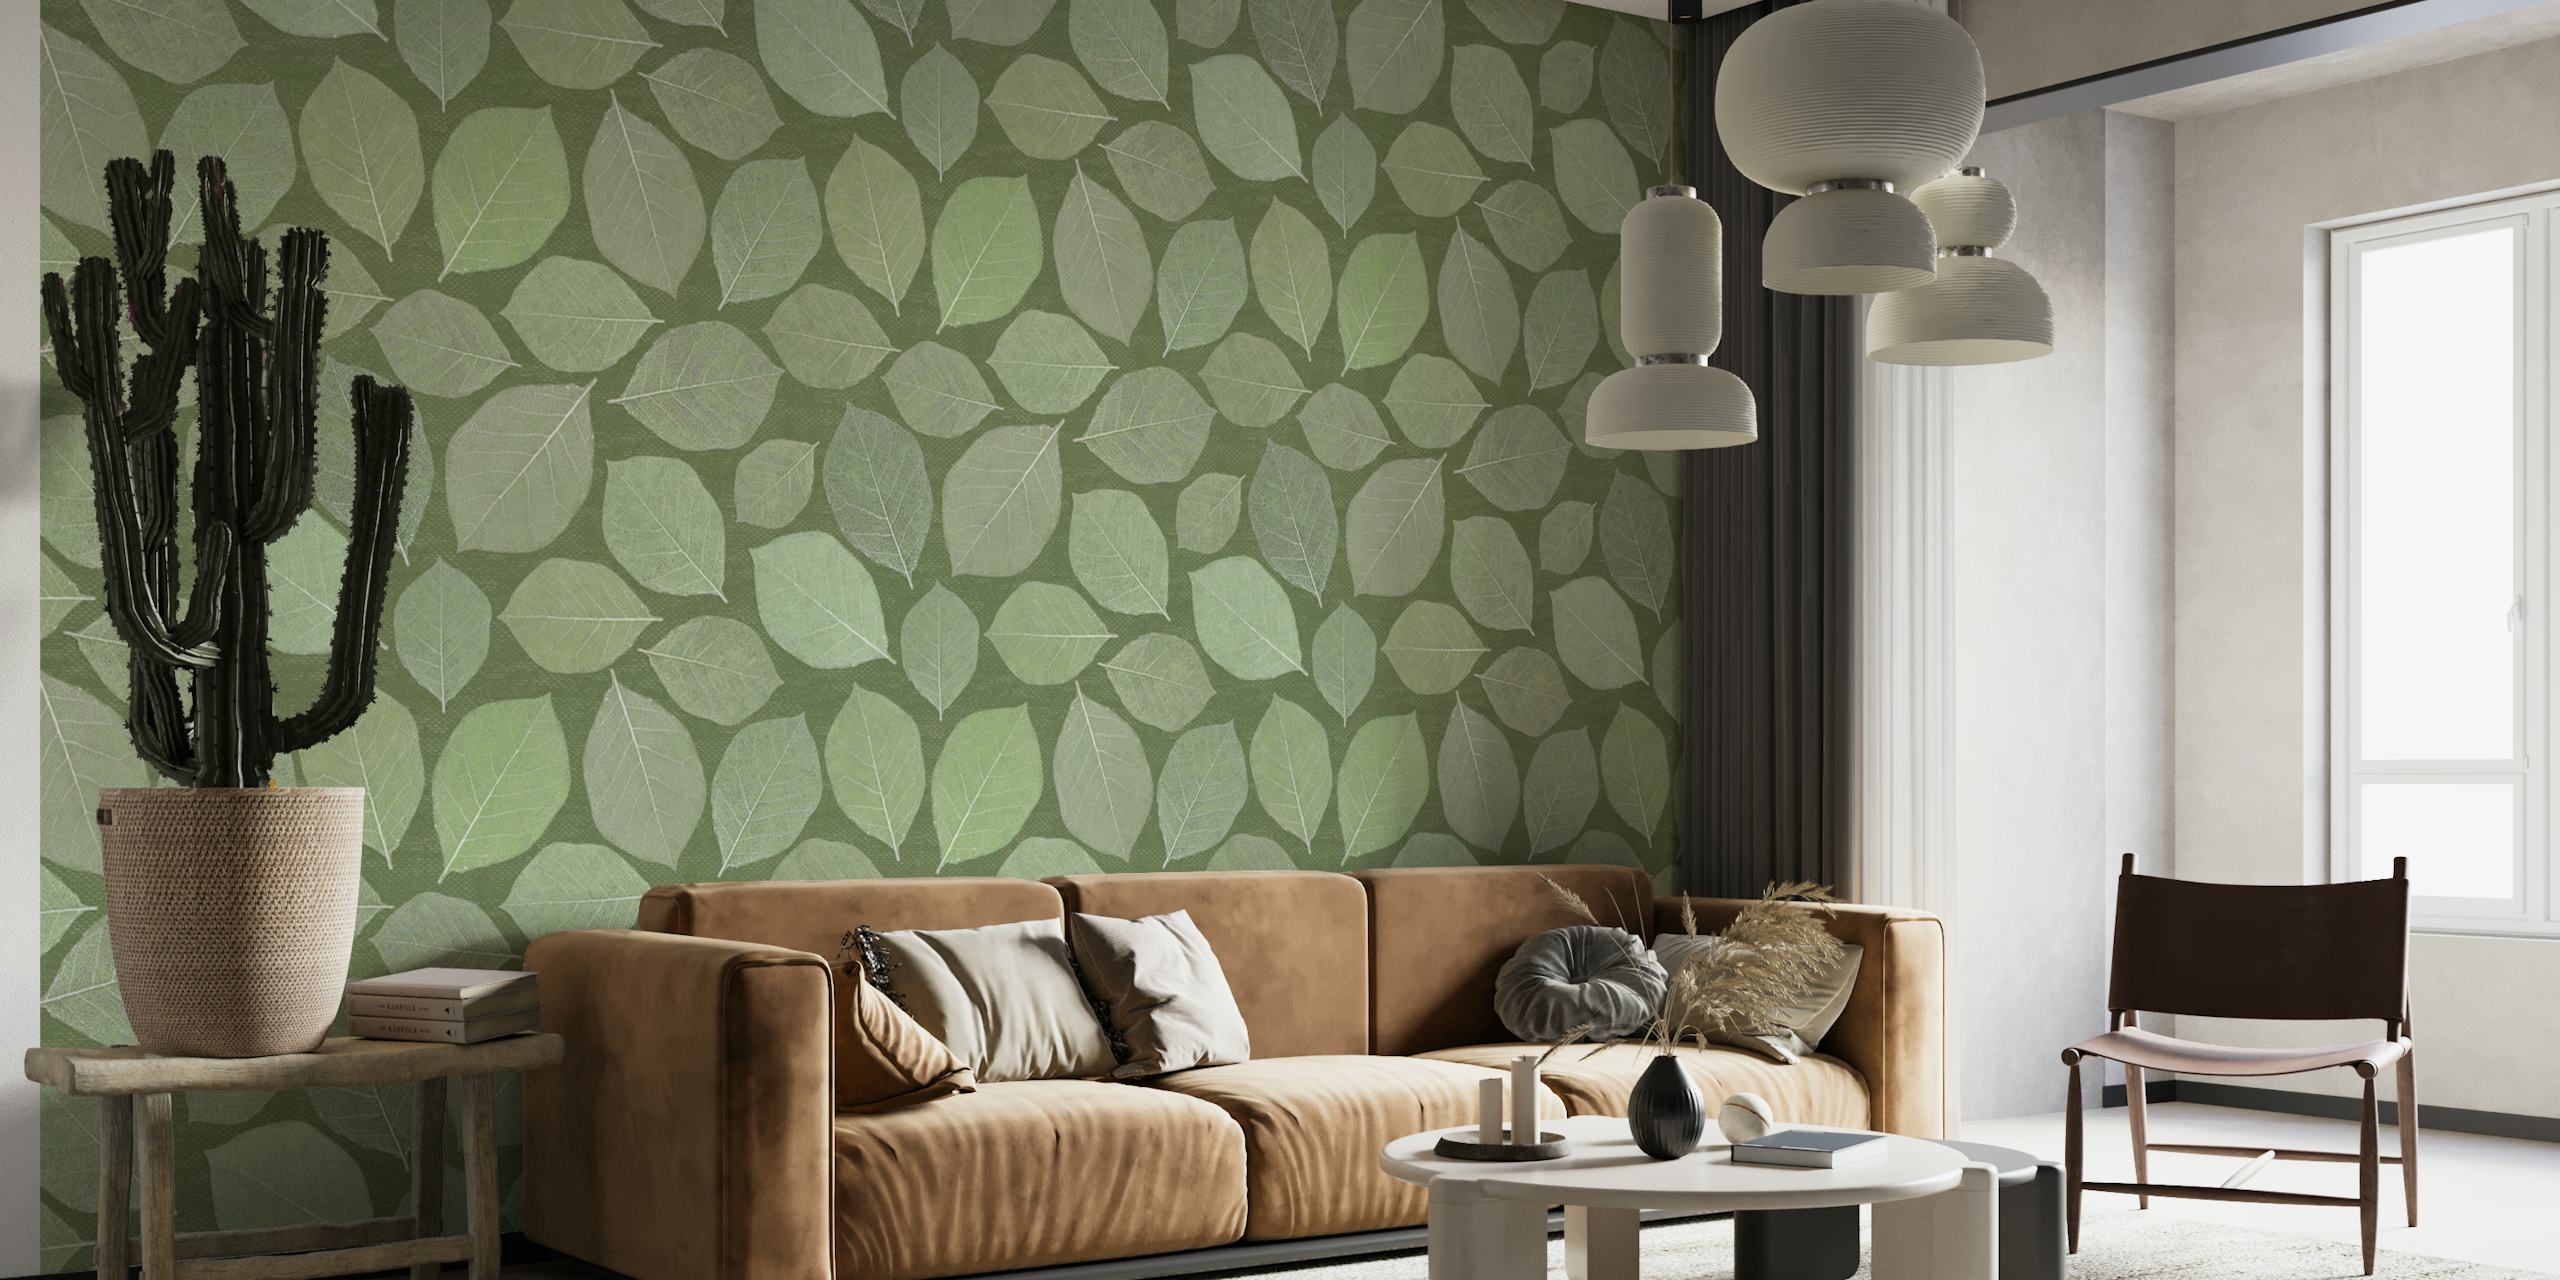 Zidna slika s lišćem magnolije u različitim zelenim nijansama savršena za miran interijer